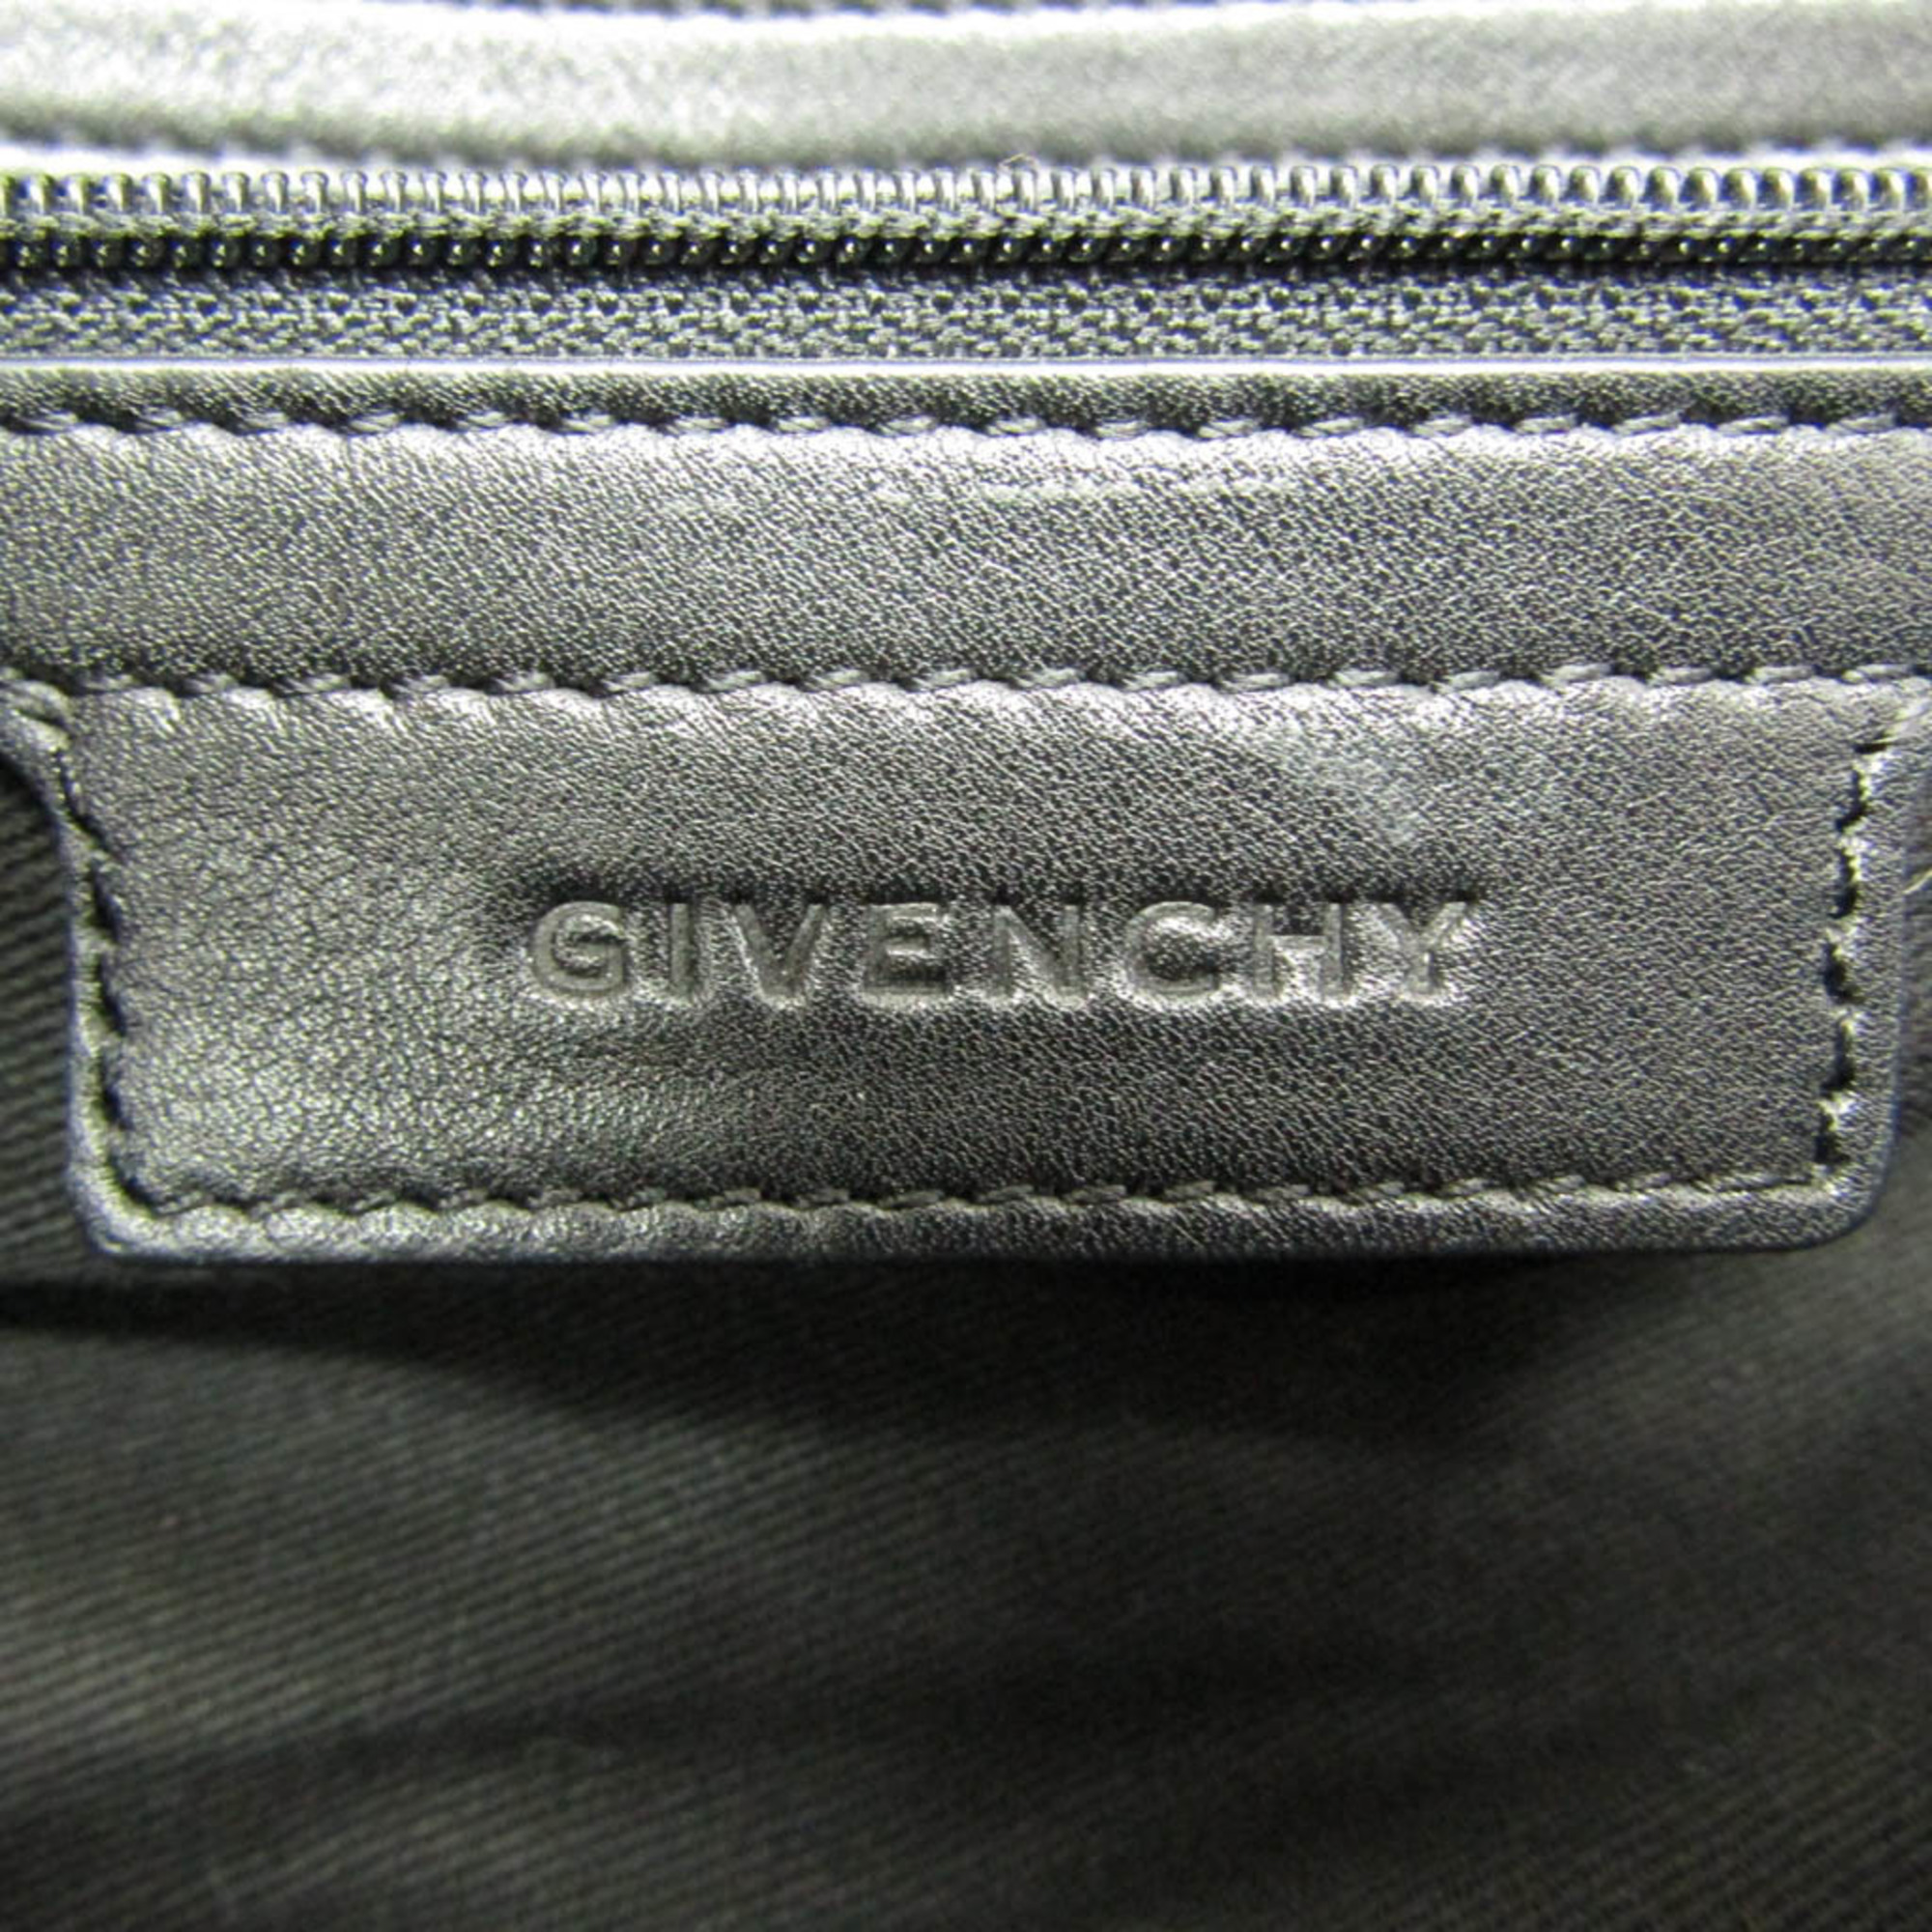 ジバンシィ(Givenchy) ナイチンゲール 星スタッズ レディース レザー,ナイロン ハンドバッグ,ショルダーバッグ ブラック